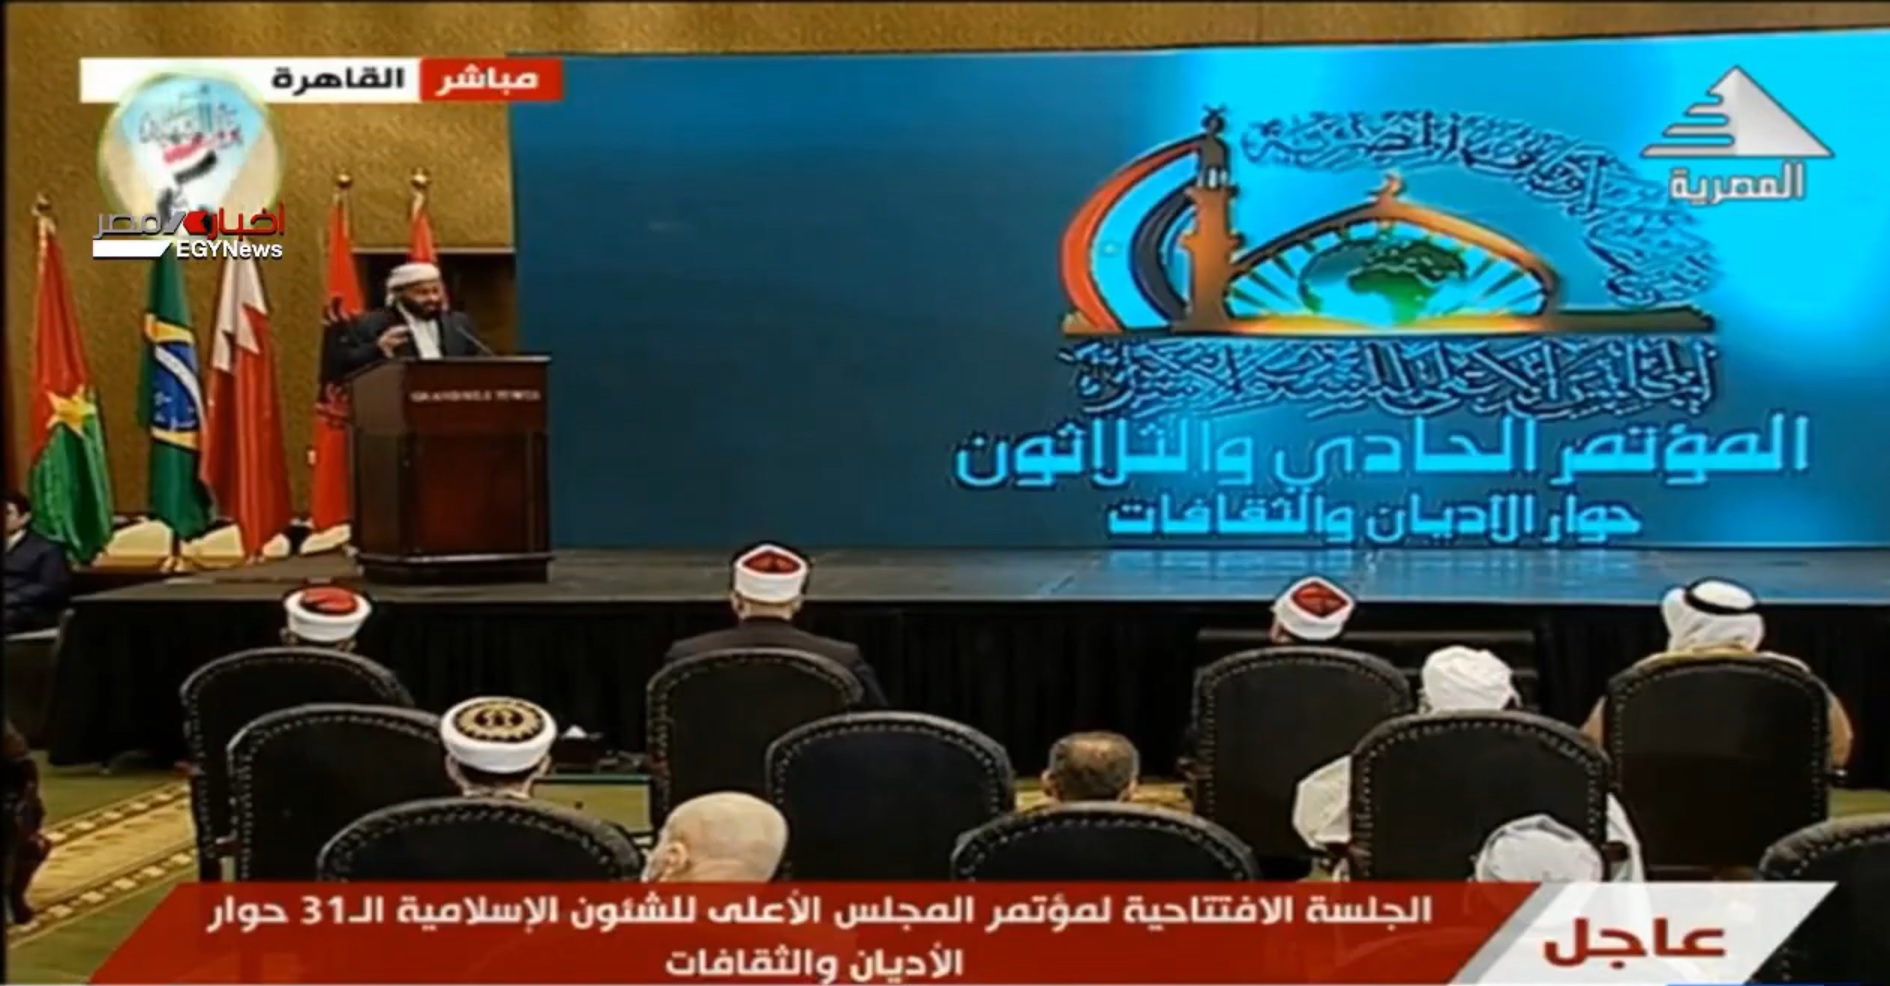 اليمن تشارك في المؤتمر الـ 31 للمجلس الأعلى للشؤون الاسلامية في القاهرة